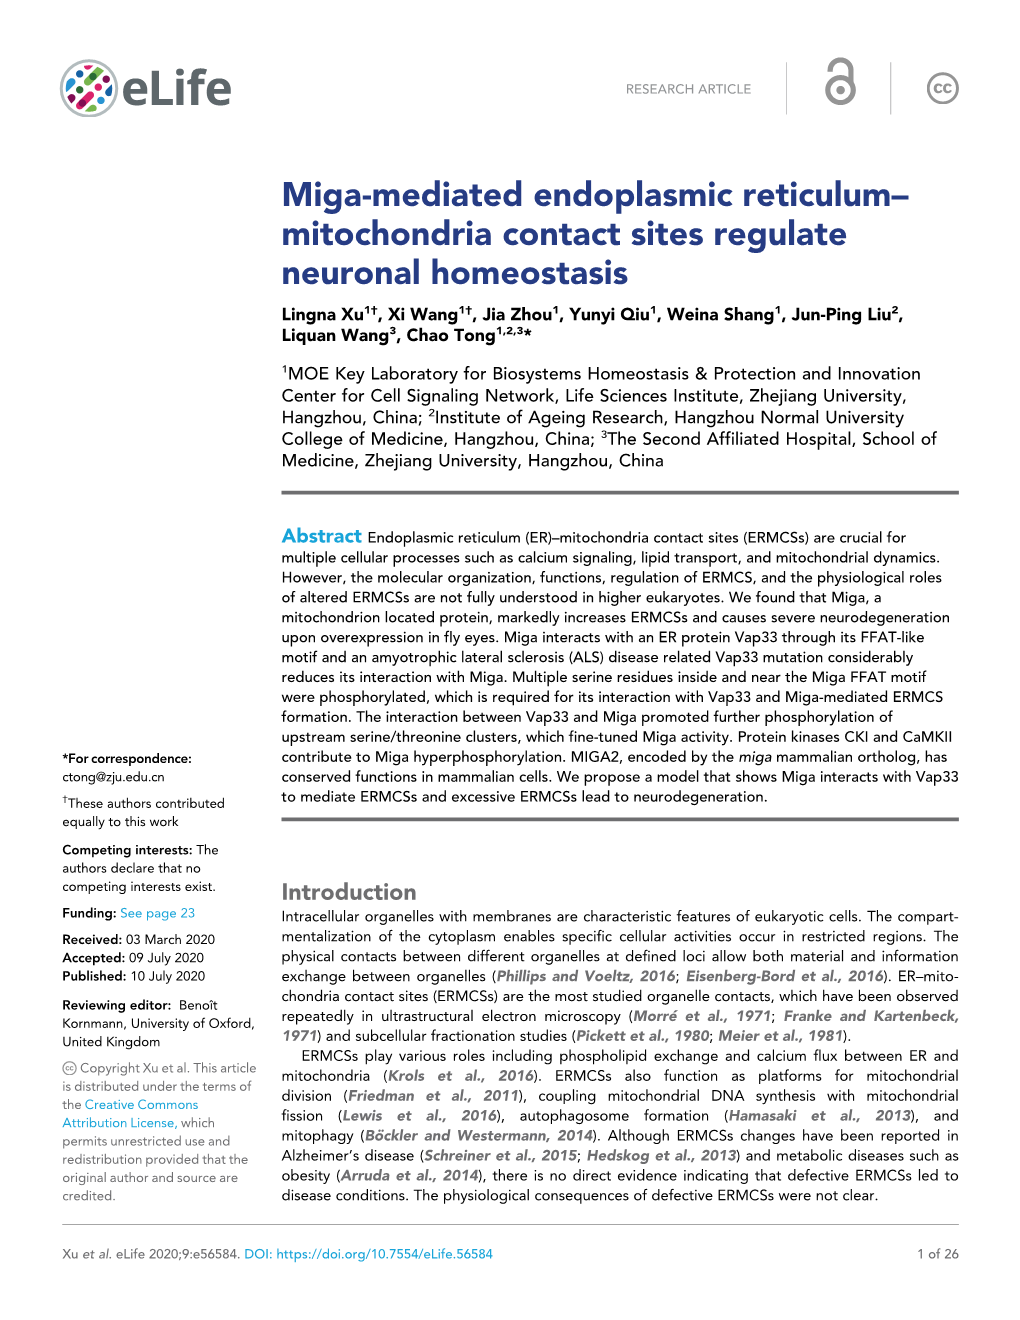 Miga-Mediated Endoplasmic Reticulum– Mitochondria Contact Sites